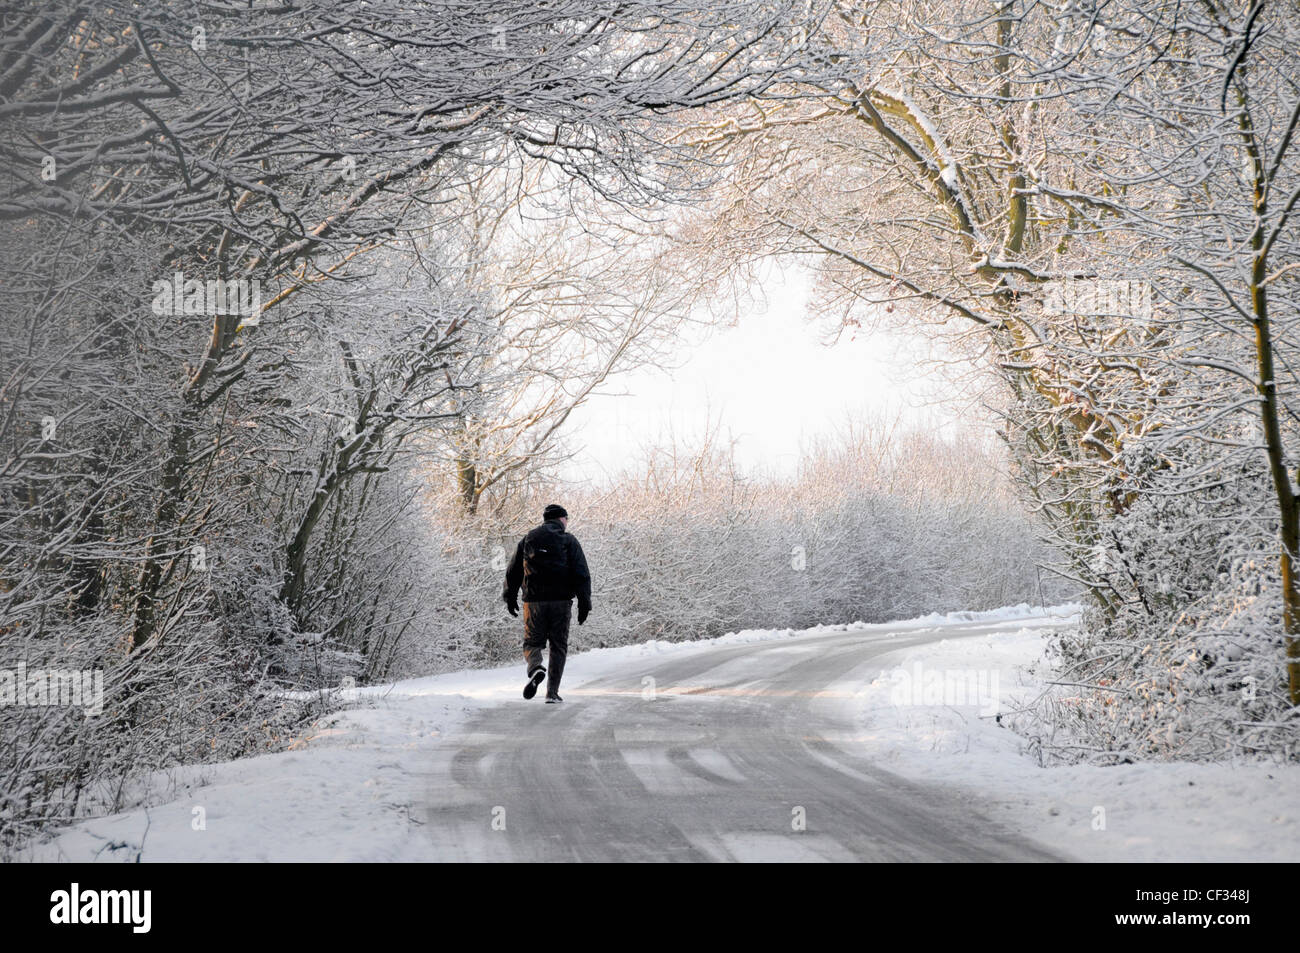 Silhouette d'homme marchant seul le long de la neige et du gel allée de campagne enneigée sous l'arche d'un arbre d'hiver blanc Les branches se plient sur la route Angleterre Royaume-Uni Banque D'Images